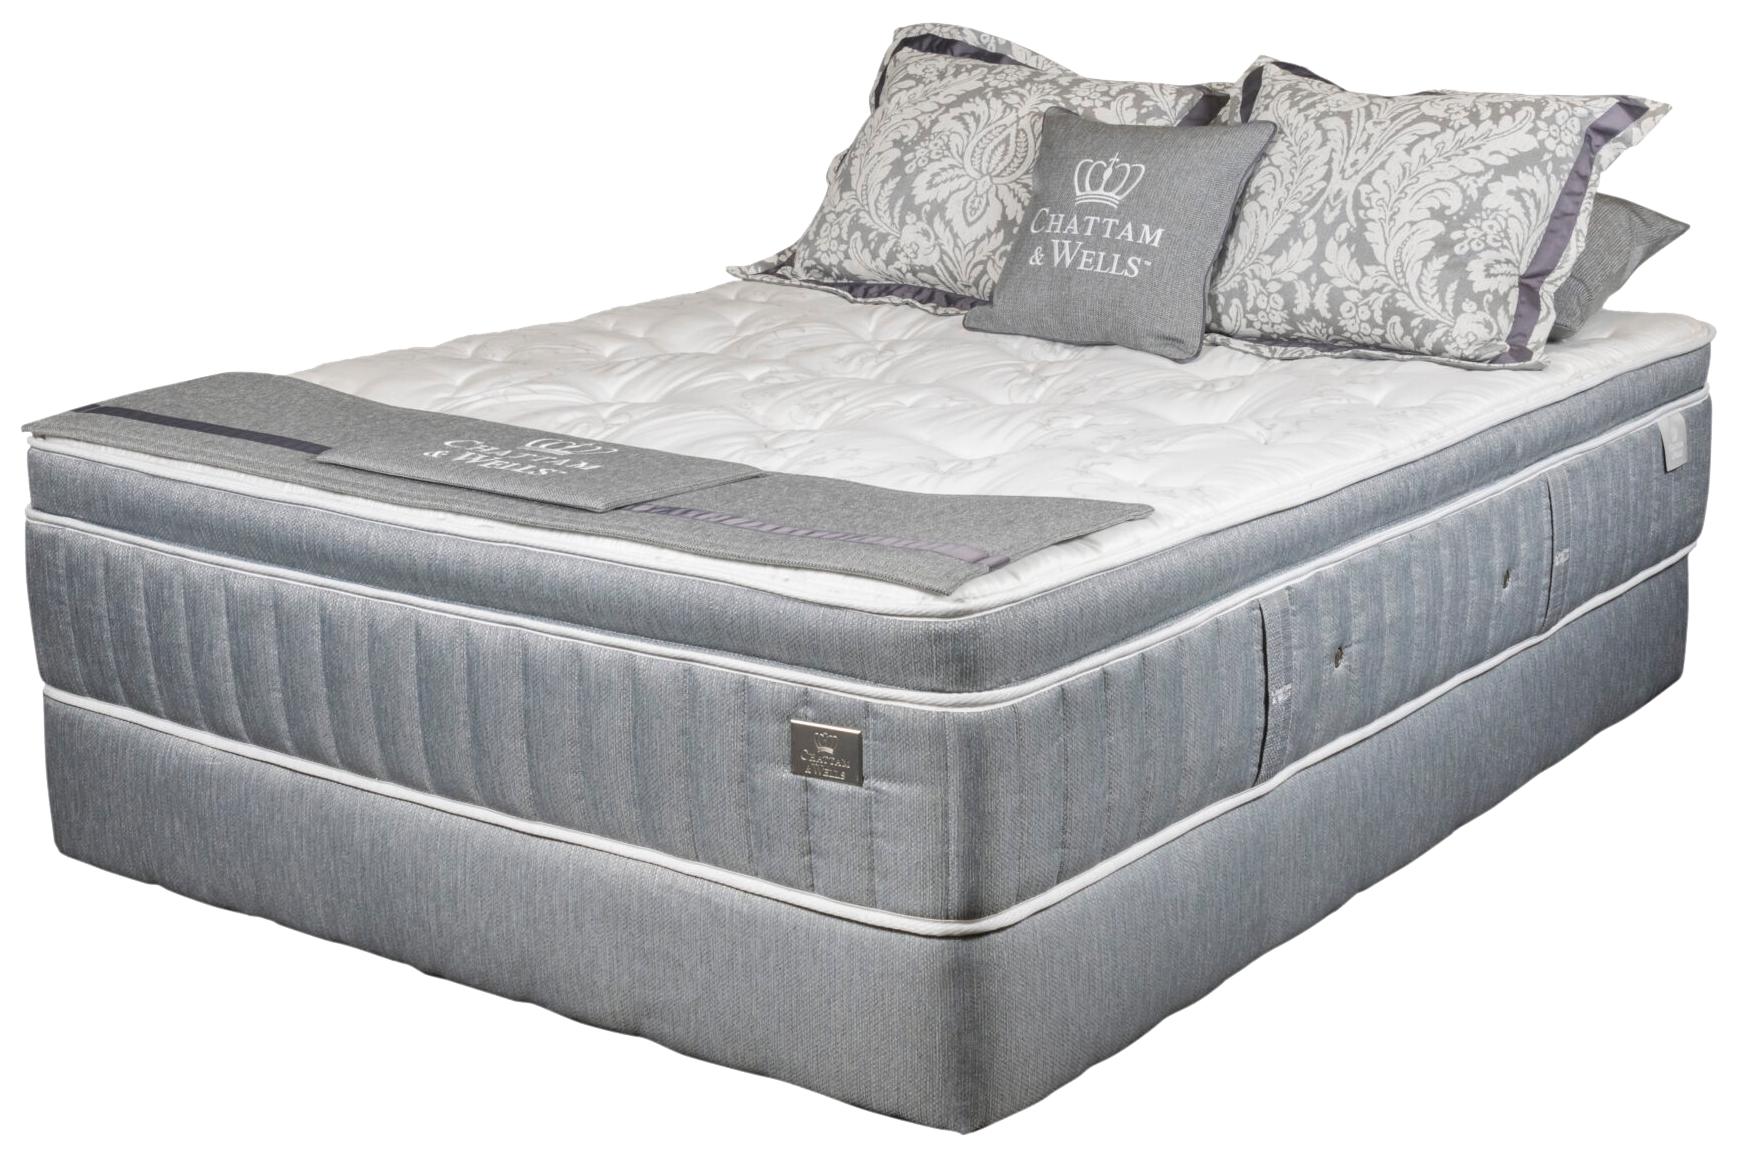 miralux rapture pillow top mattress